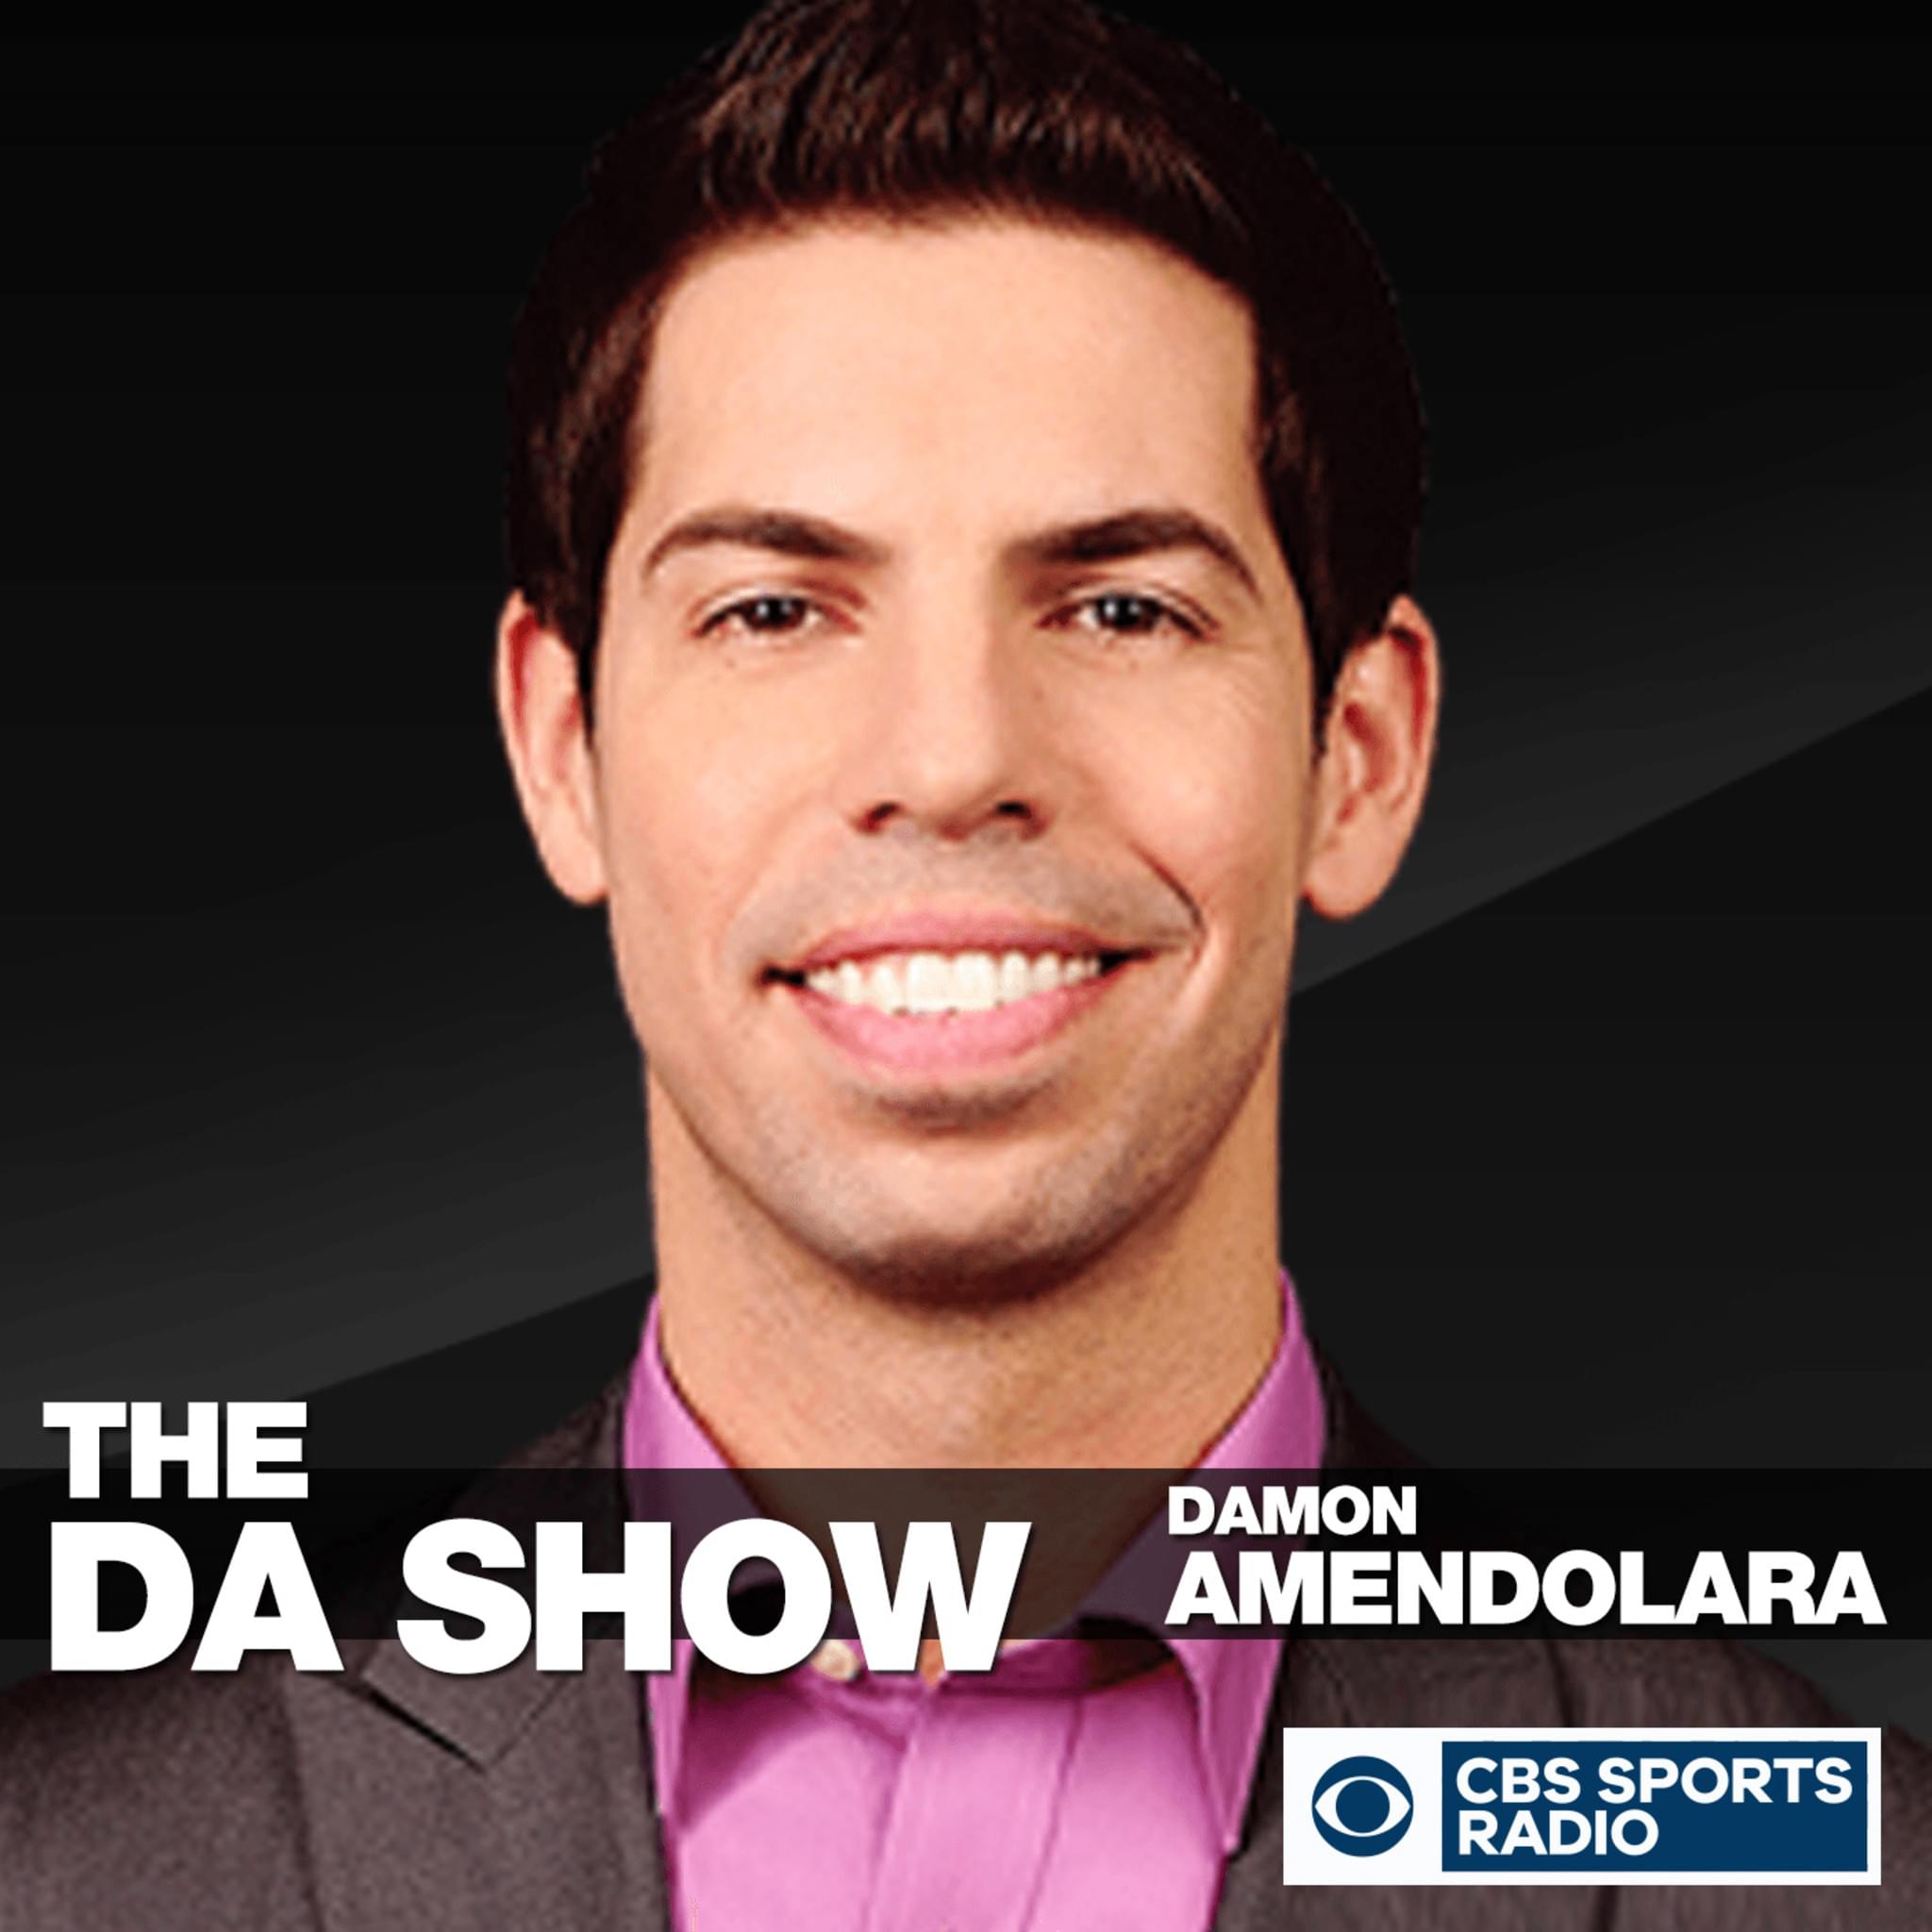 The DA Show